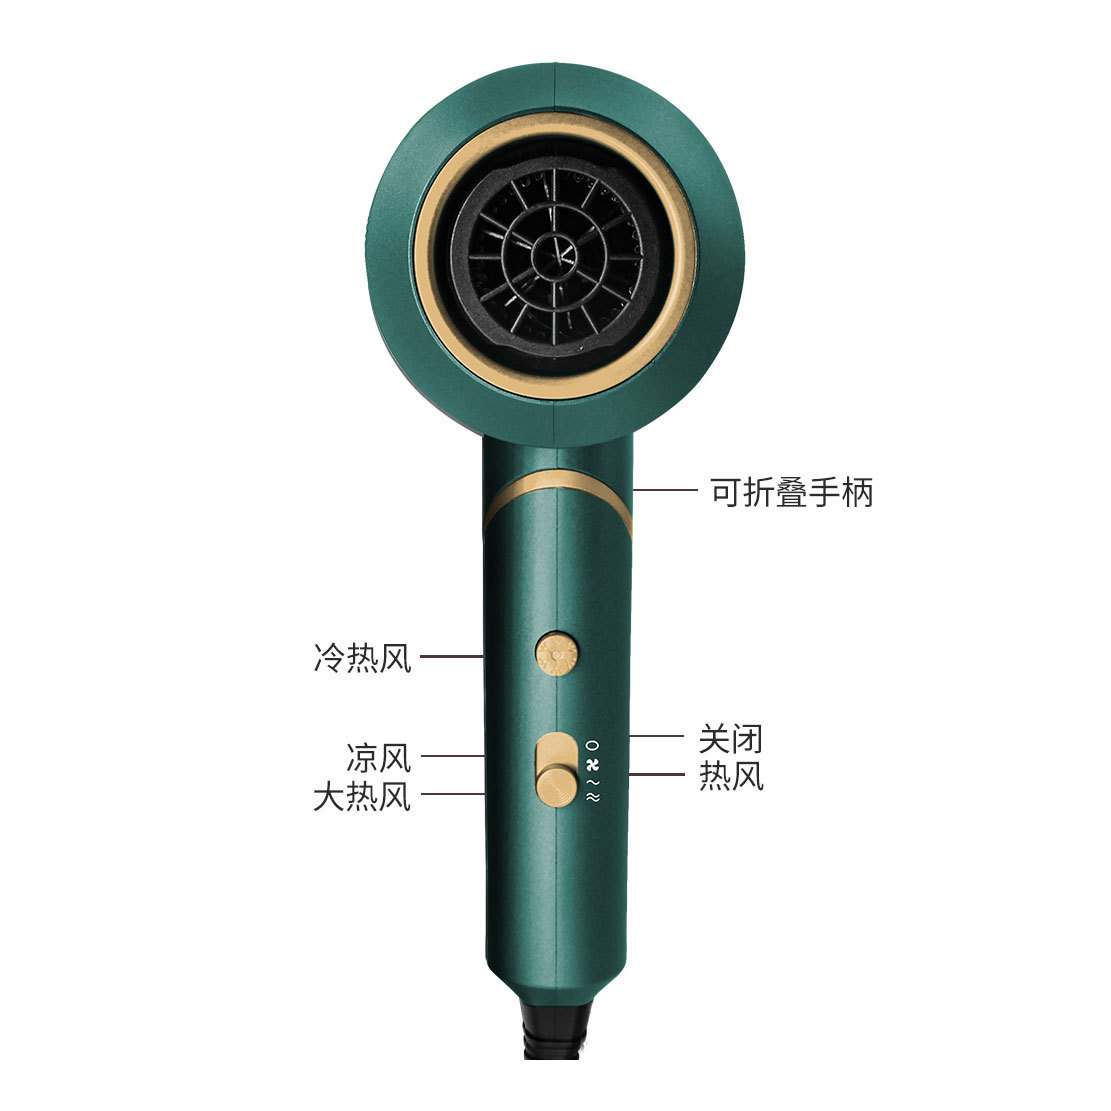 High-power folding hair dryer negative ion hair dryer household hair dryer